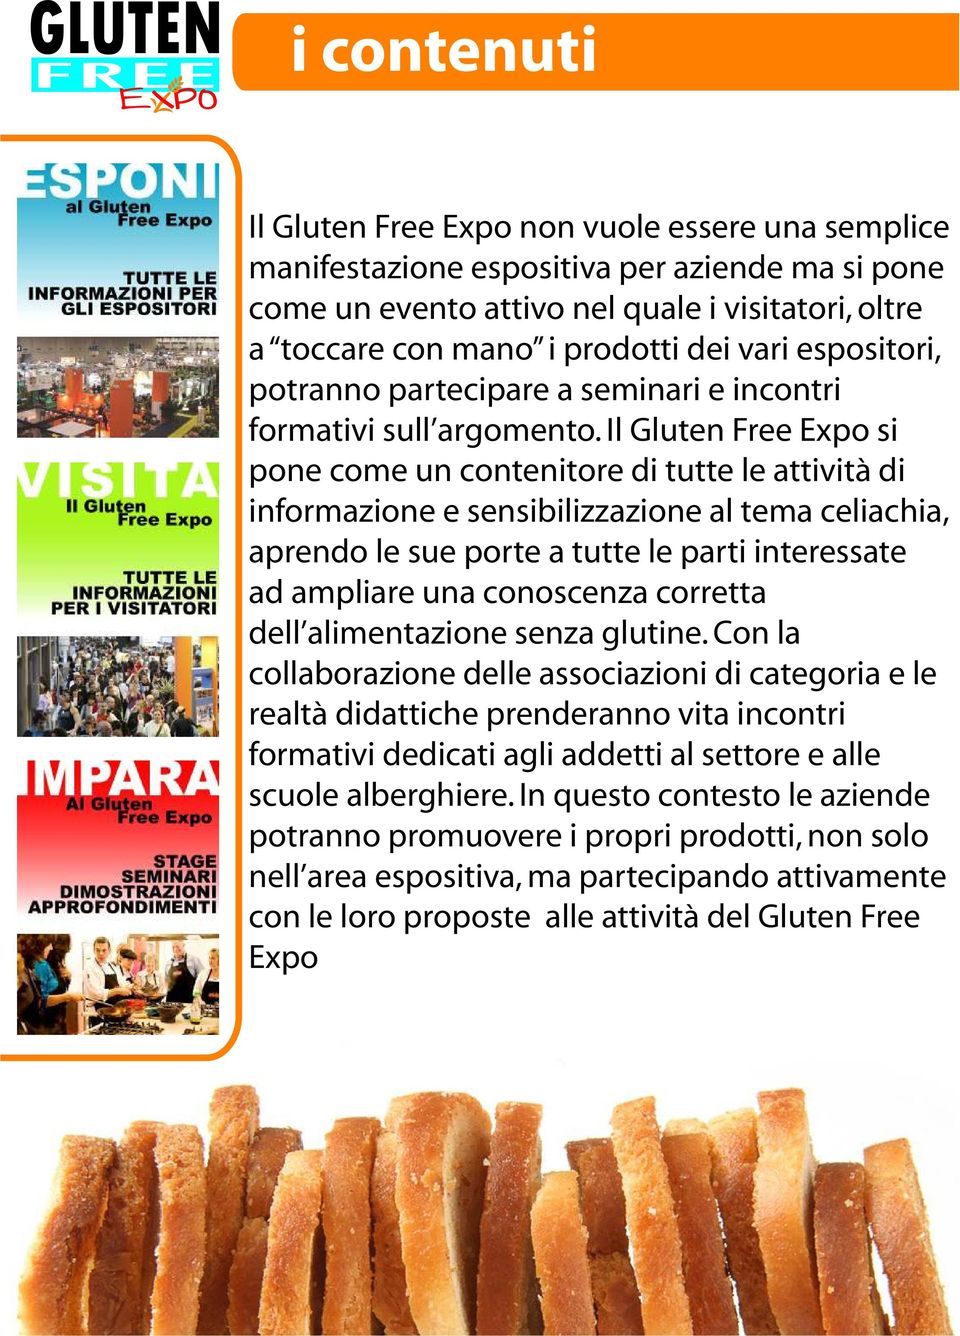 Il Gluten Free Expo si pone come un contenitore di tutte le attività di informazione e sensibilizzazione al tema celiachia, aprendo le sue porte a tutte le parti interessate ad ampliare una